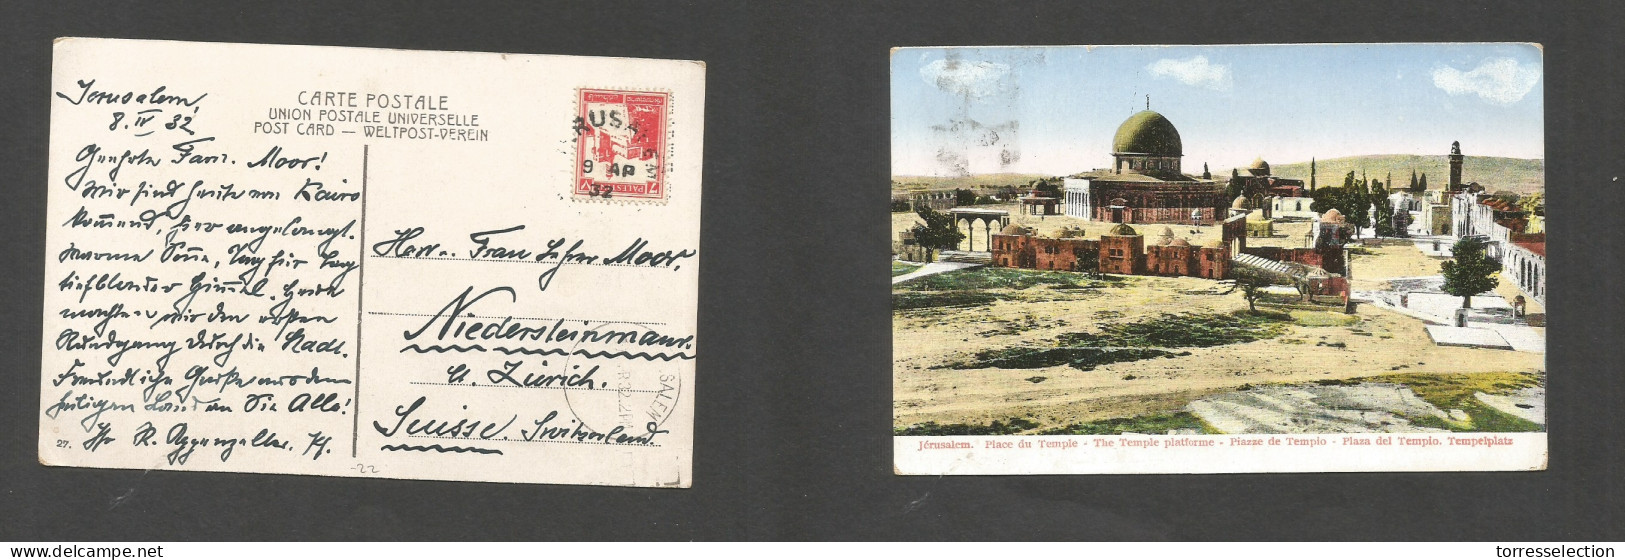 PALESTINE. 1932 (8 Apr) Jerusalem - Switzerland, Niedersleinmans Via Salem. Fkd Ppc. Fine. SALE. - Palästina